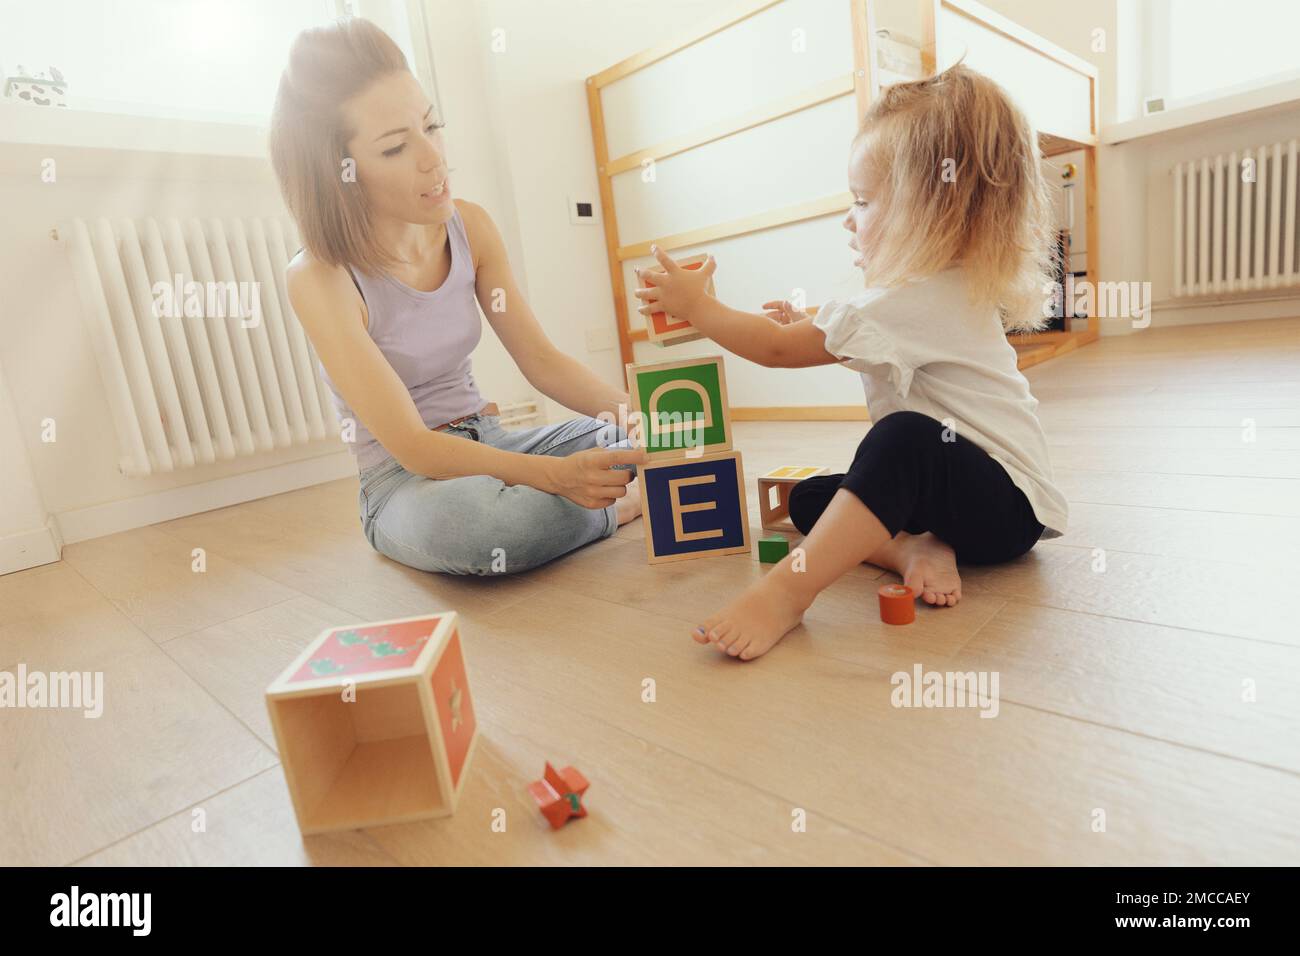 la mère et la fille jouent avec des cubes en bois, avec des lettres sur les visages et capable de contenir des plus petits; la pièce est claire et claire Banque D'Images